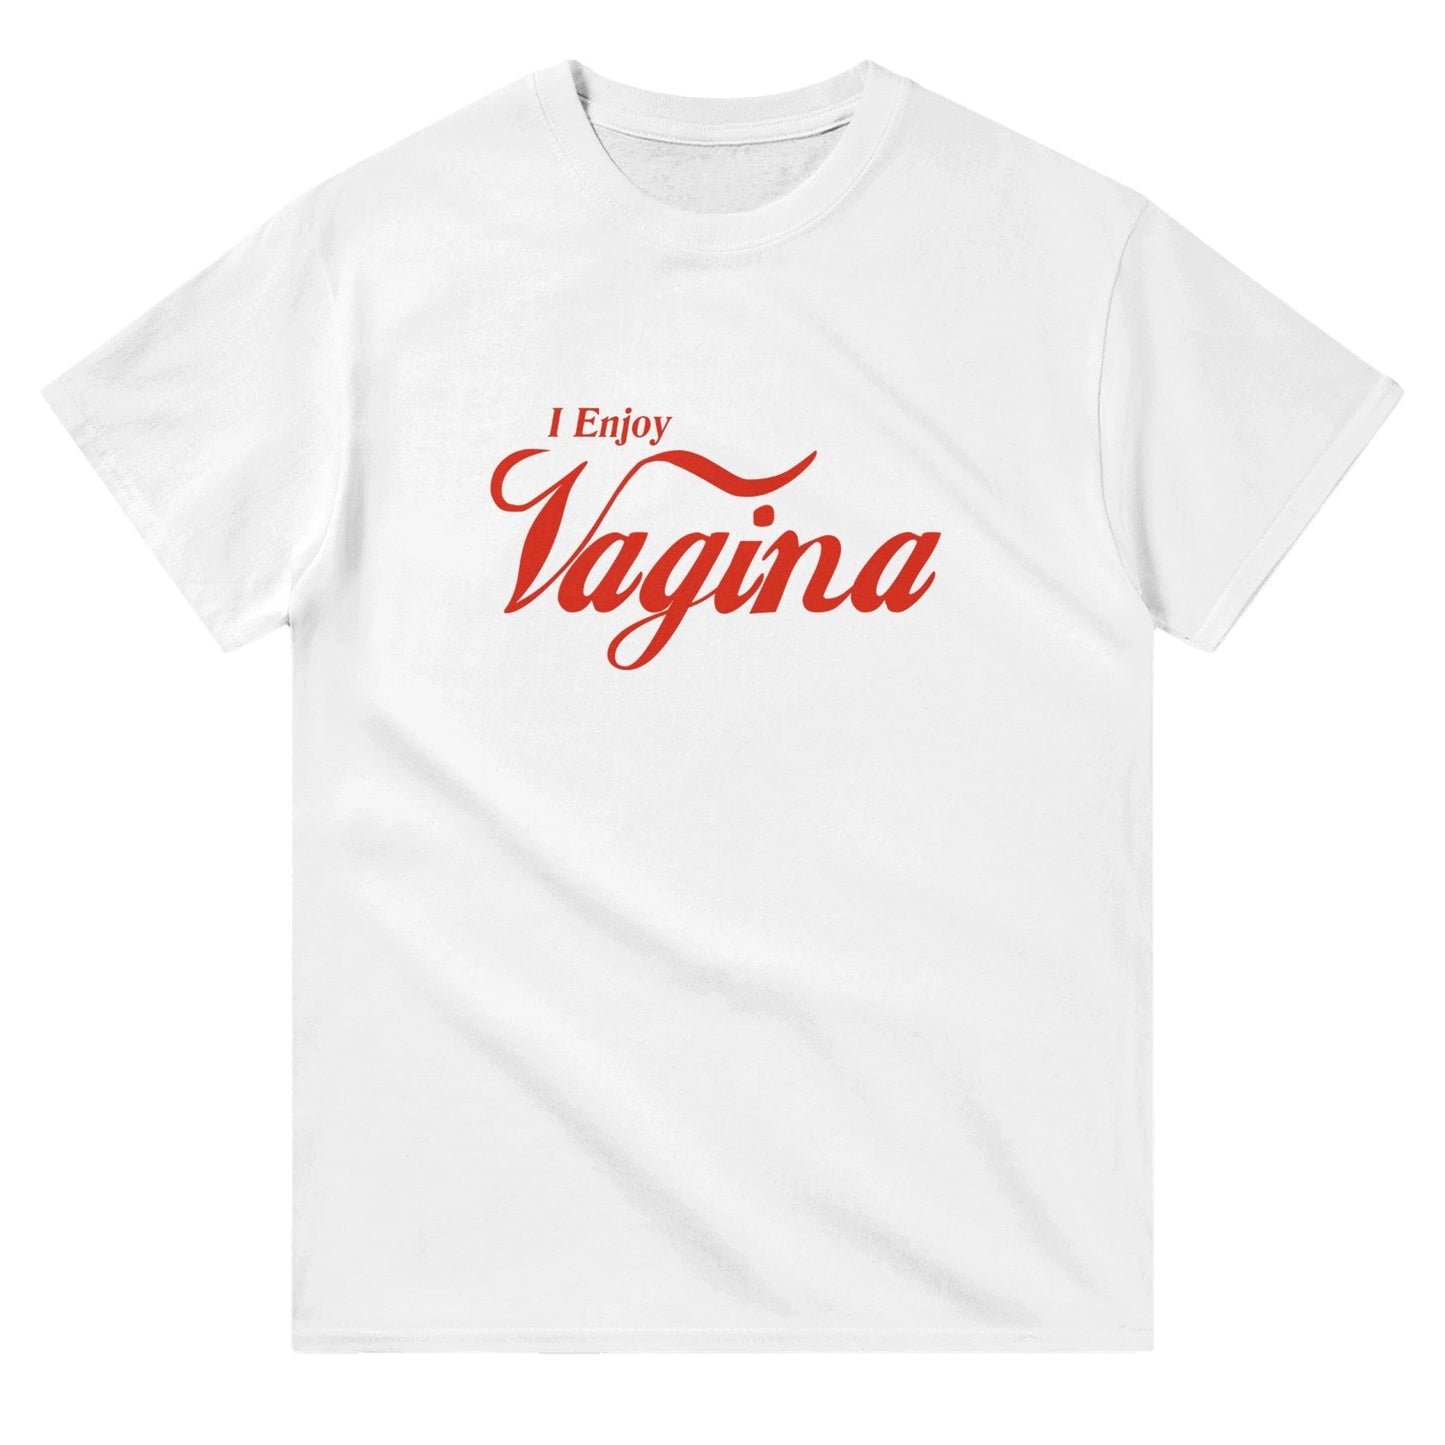 I Enjoy Vagina Coke T-Shirt Graphic Tee White / Mens / S BC Australia